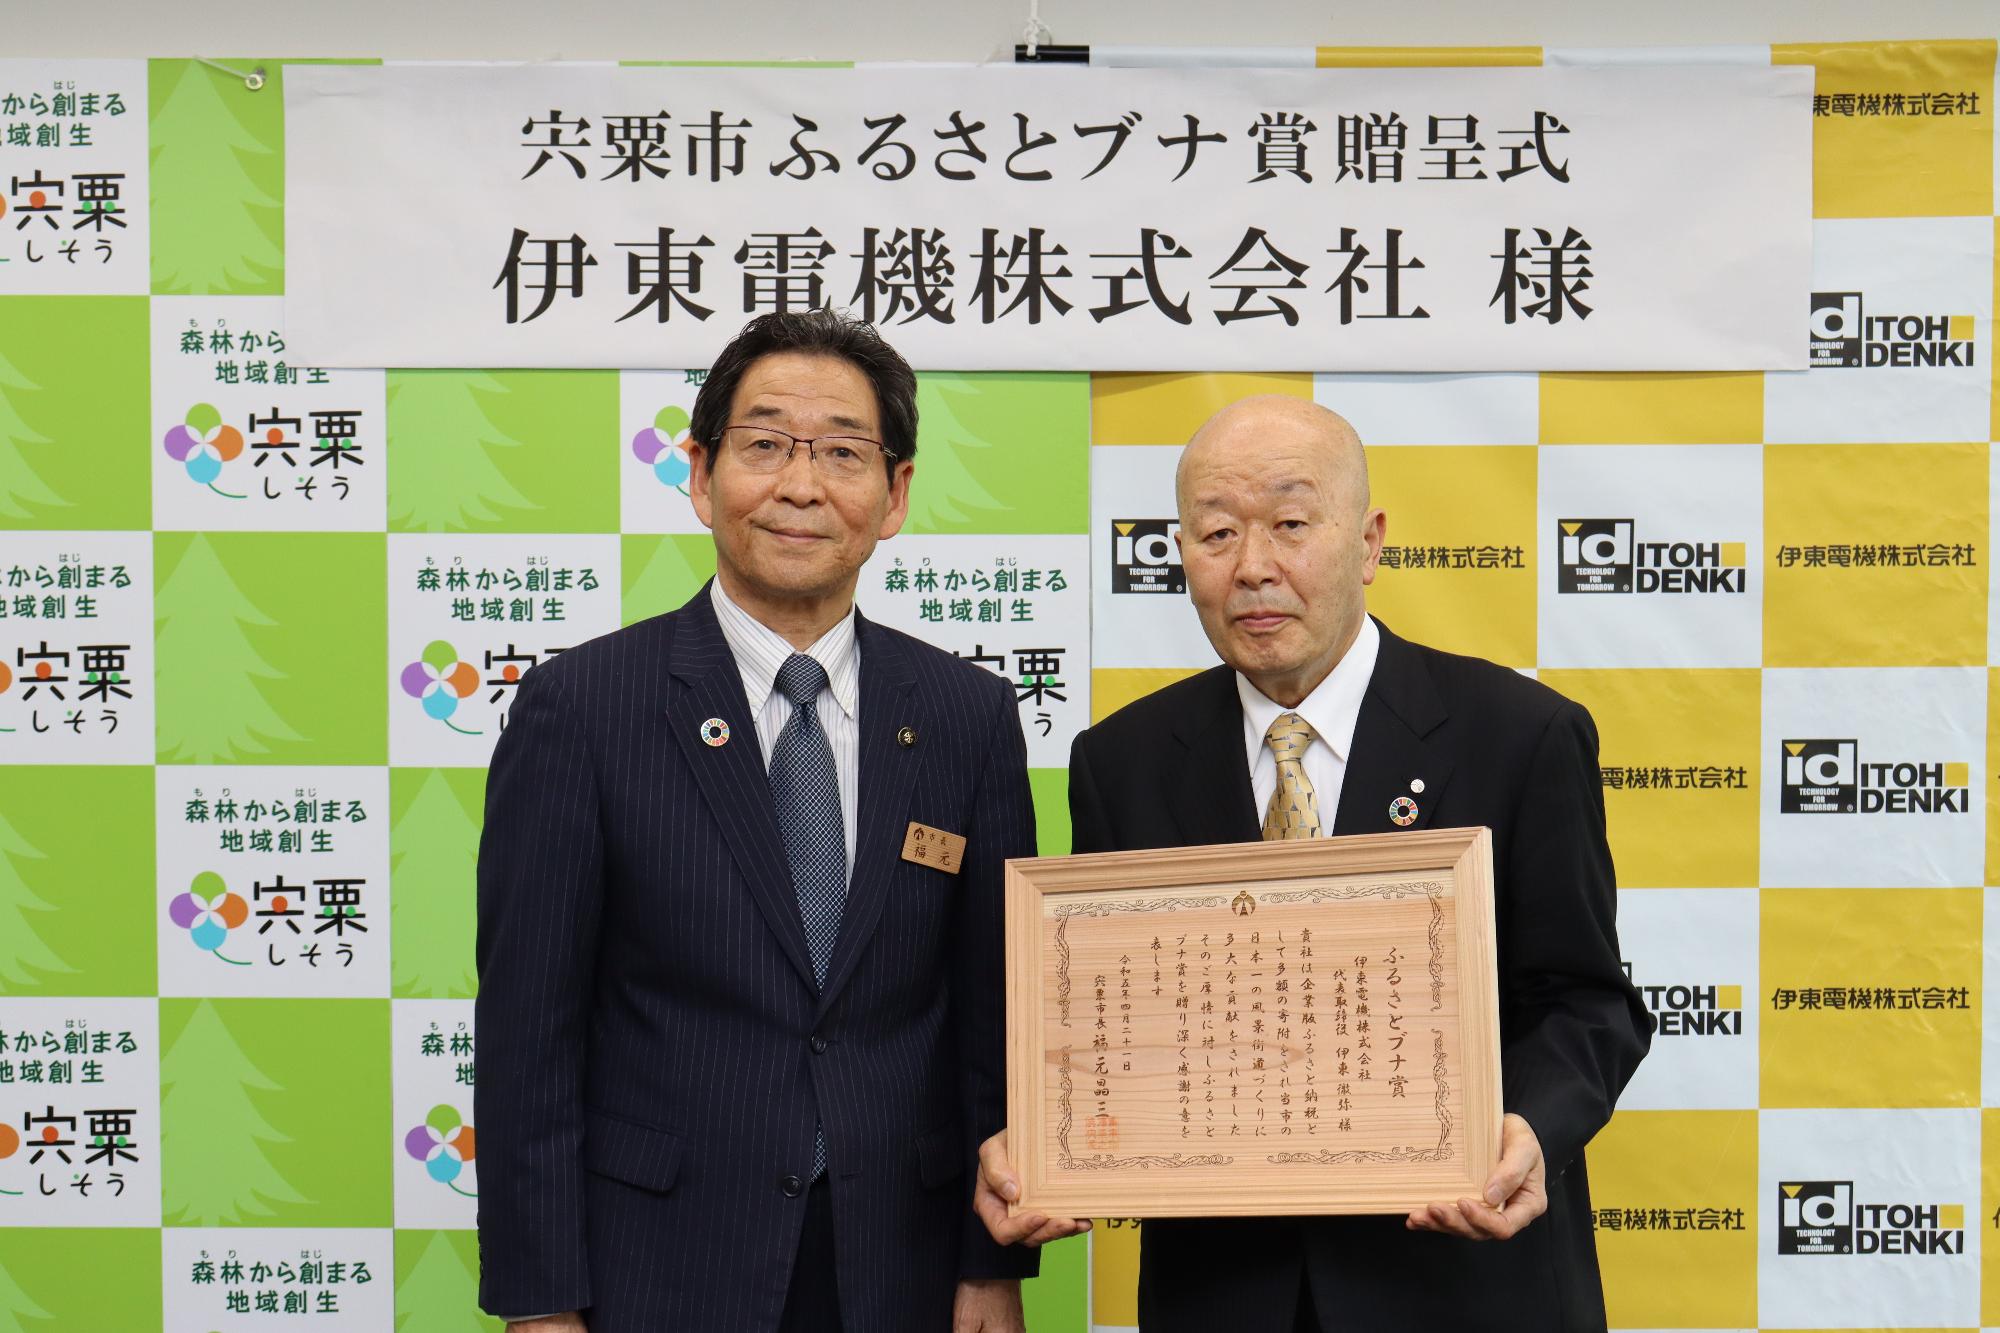 福元市長とふるさとブナ賞の賞状を手にした伊東電機株式会社の伊藤代表取締役会長が並んでいる写真